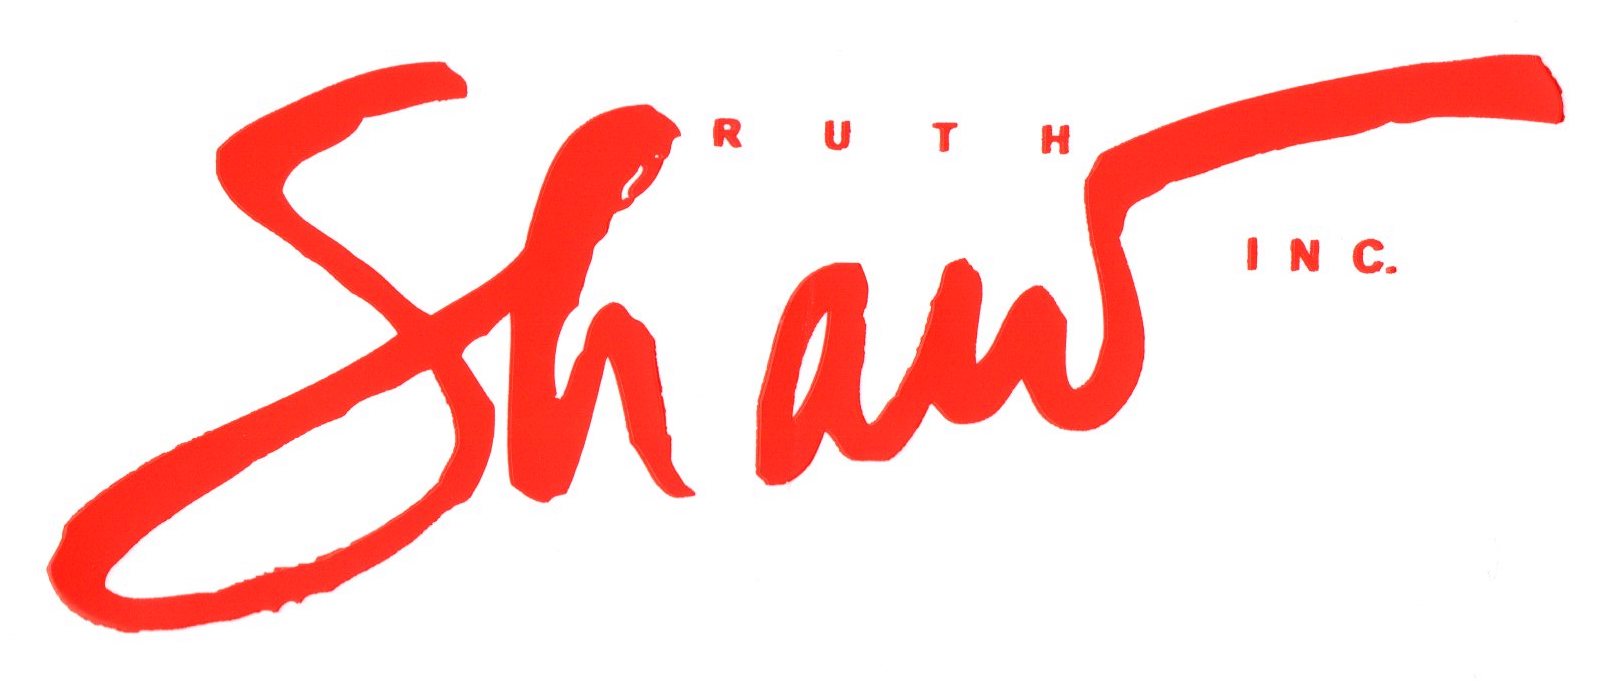 Ruth Shaw Logo